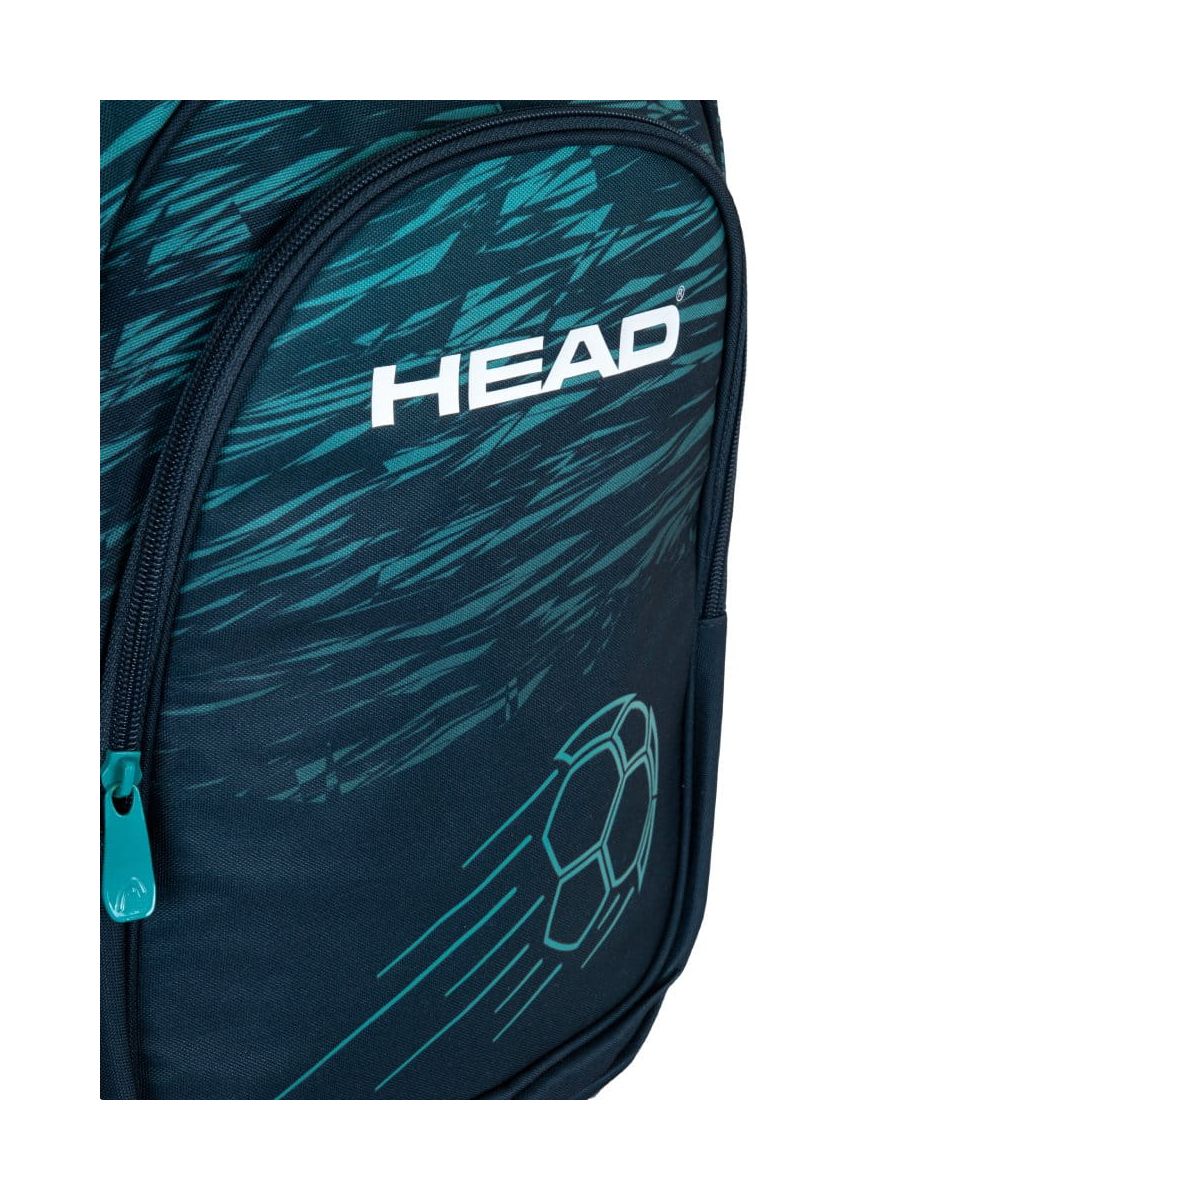 Plecak Astra HEAD CHAMPION, AY300 (502023087)